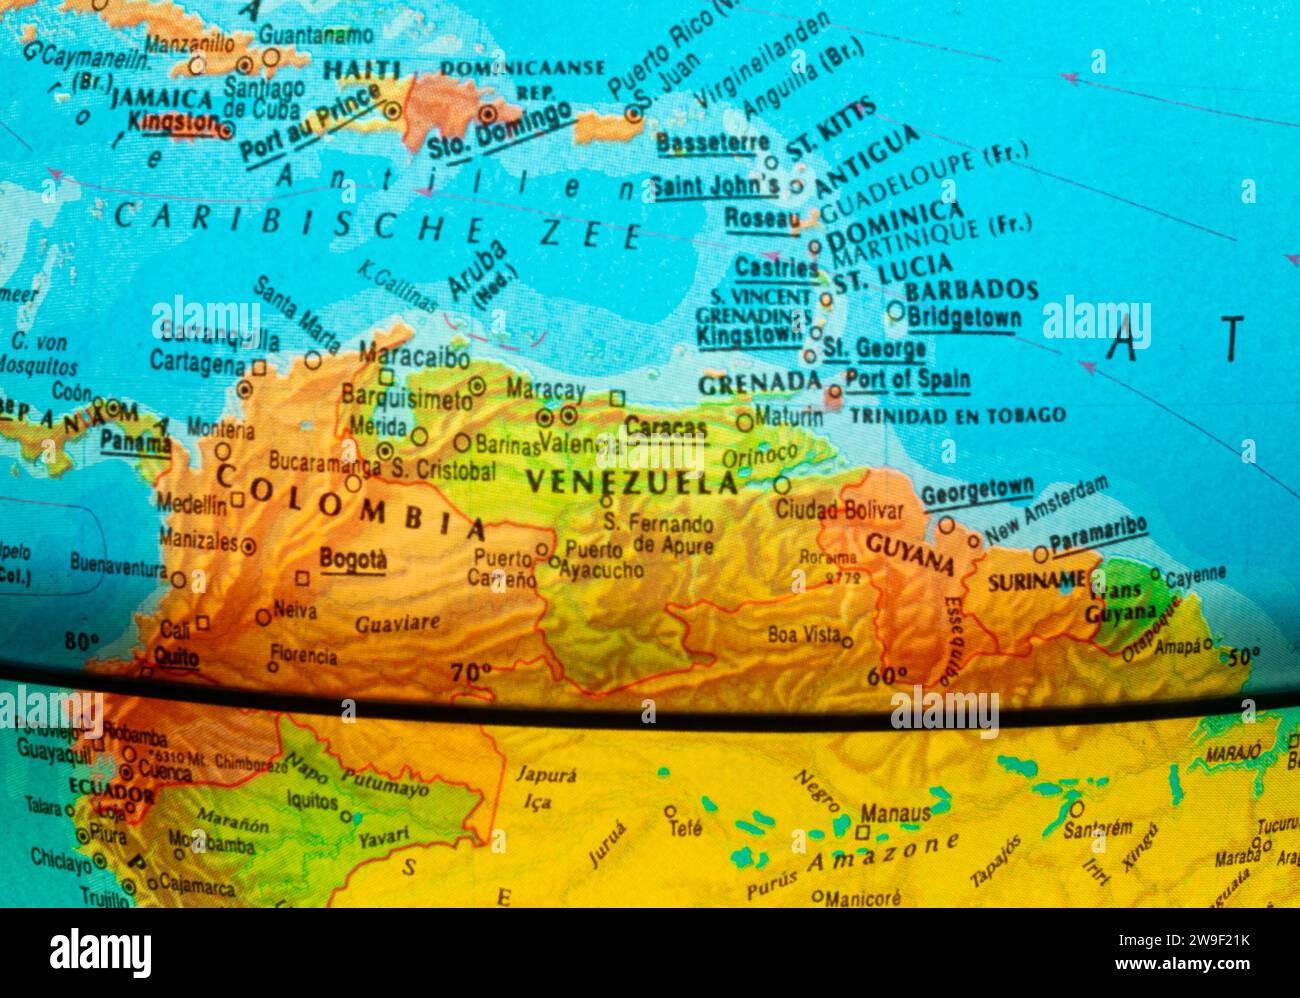 Teil des Globus, wo der nördliche Teil Südamerikas und ein Teil des Karibischen Meeres zu sehen sind. Die dicke gekrümmte schwarze Linie ist der Äquator. Stockfoto